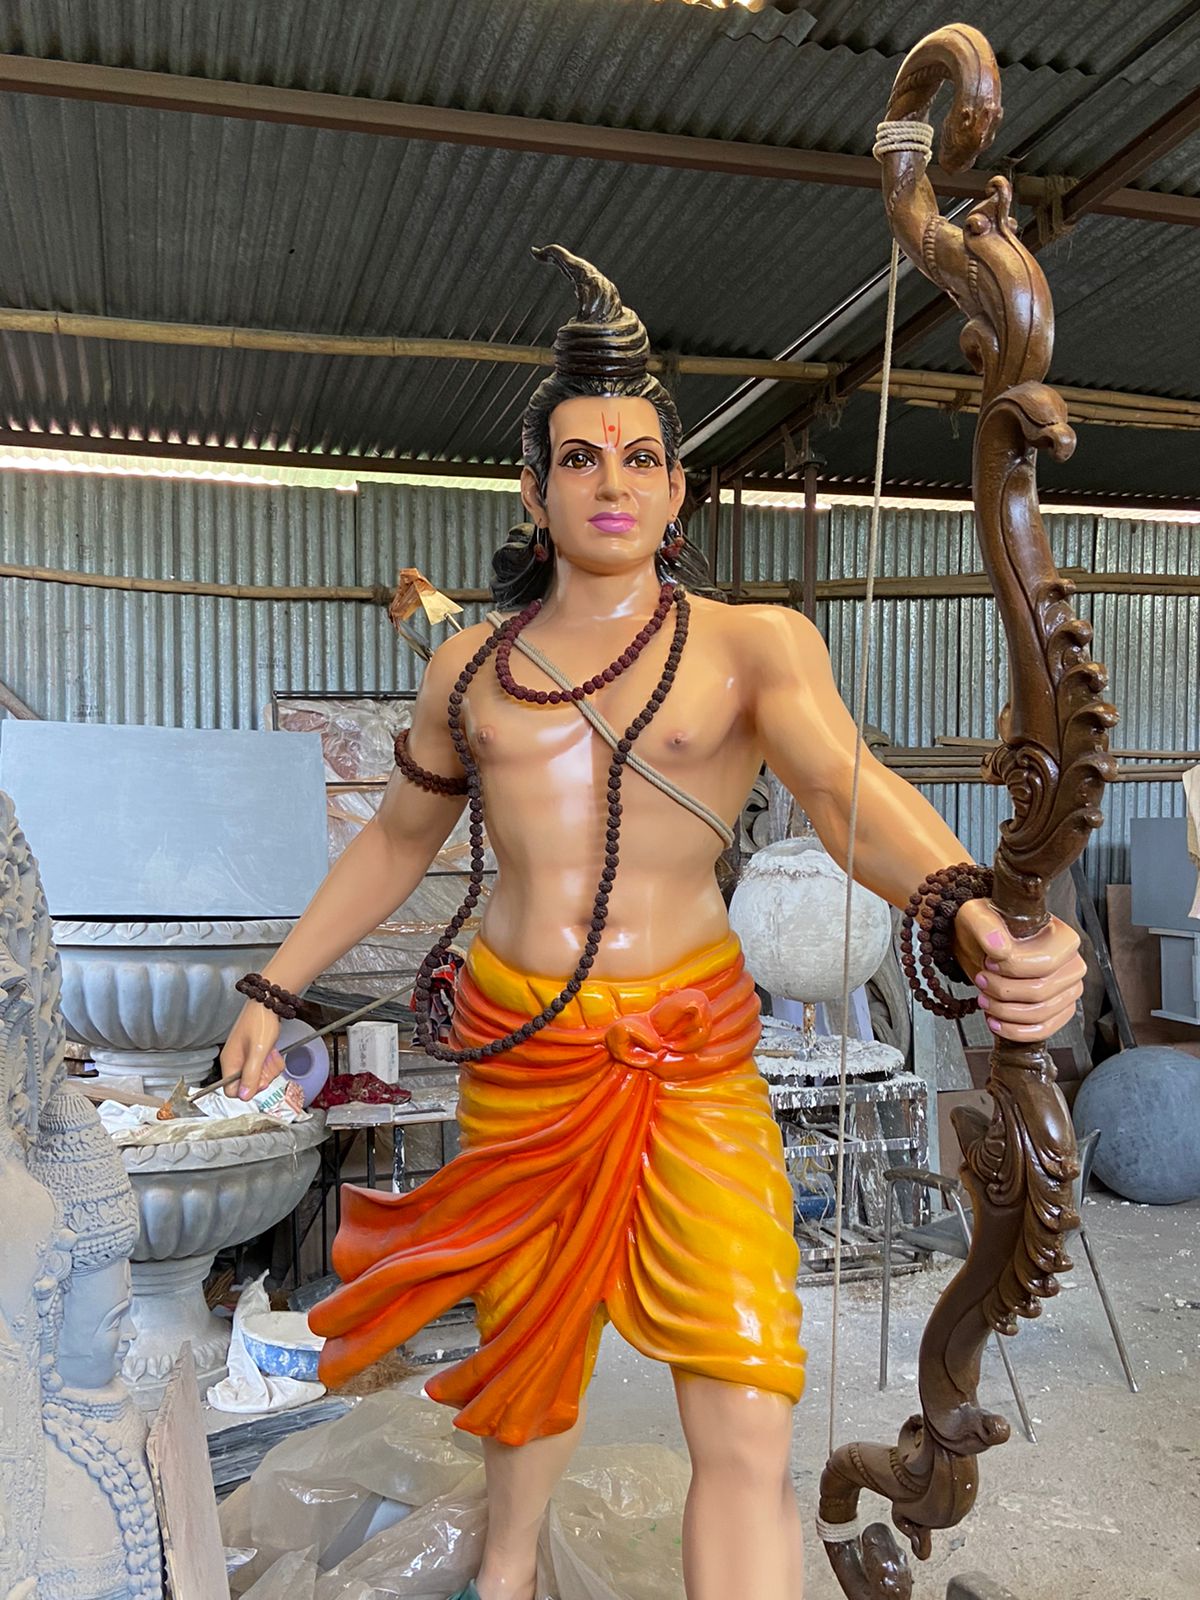 Lord Shri Rama Statue | हडपसरमध्ये साकारणार 9 फूट उंचीचा प्रभू श्रीरामाचा पूर्णाकृती पुतळा 